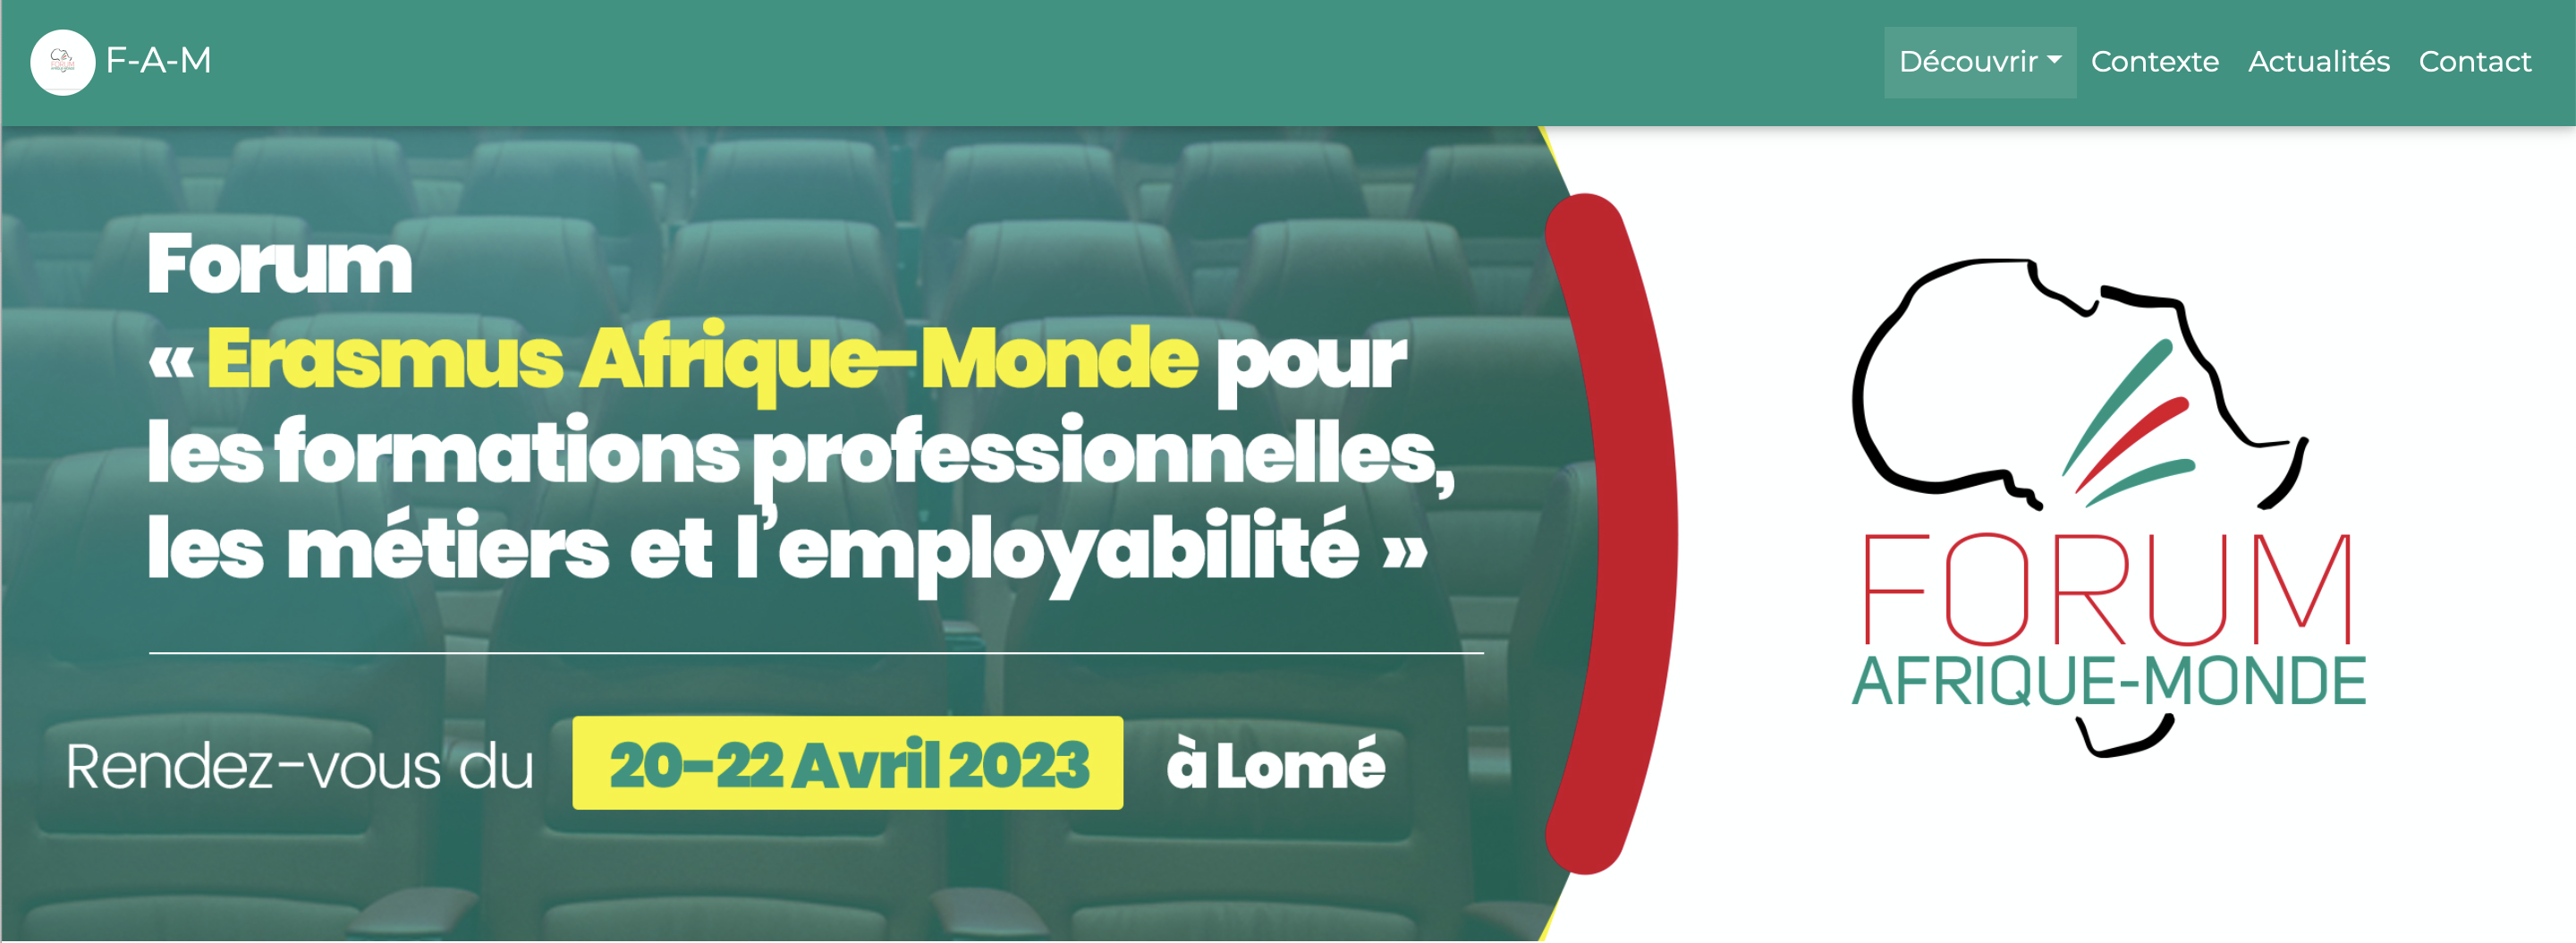 Un forum des métiers pour l’insertion des jeunes à Lomé du 20 au 22 avril 2023